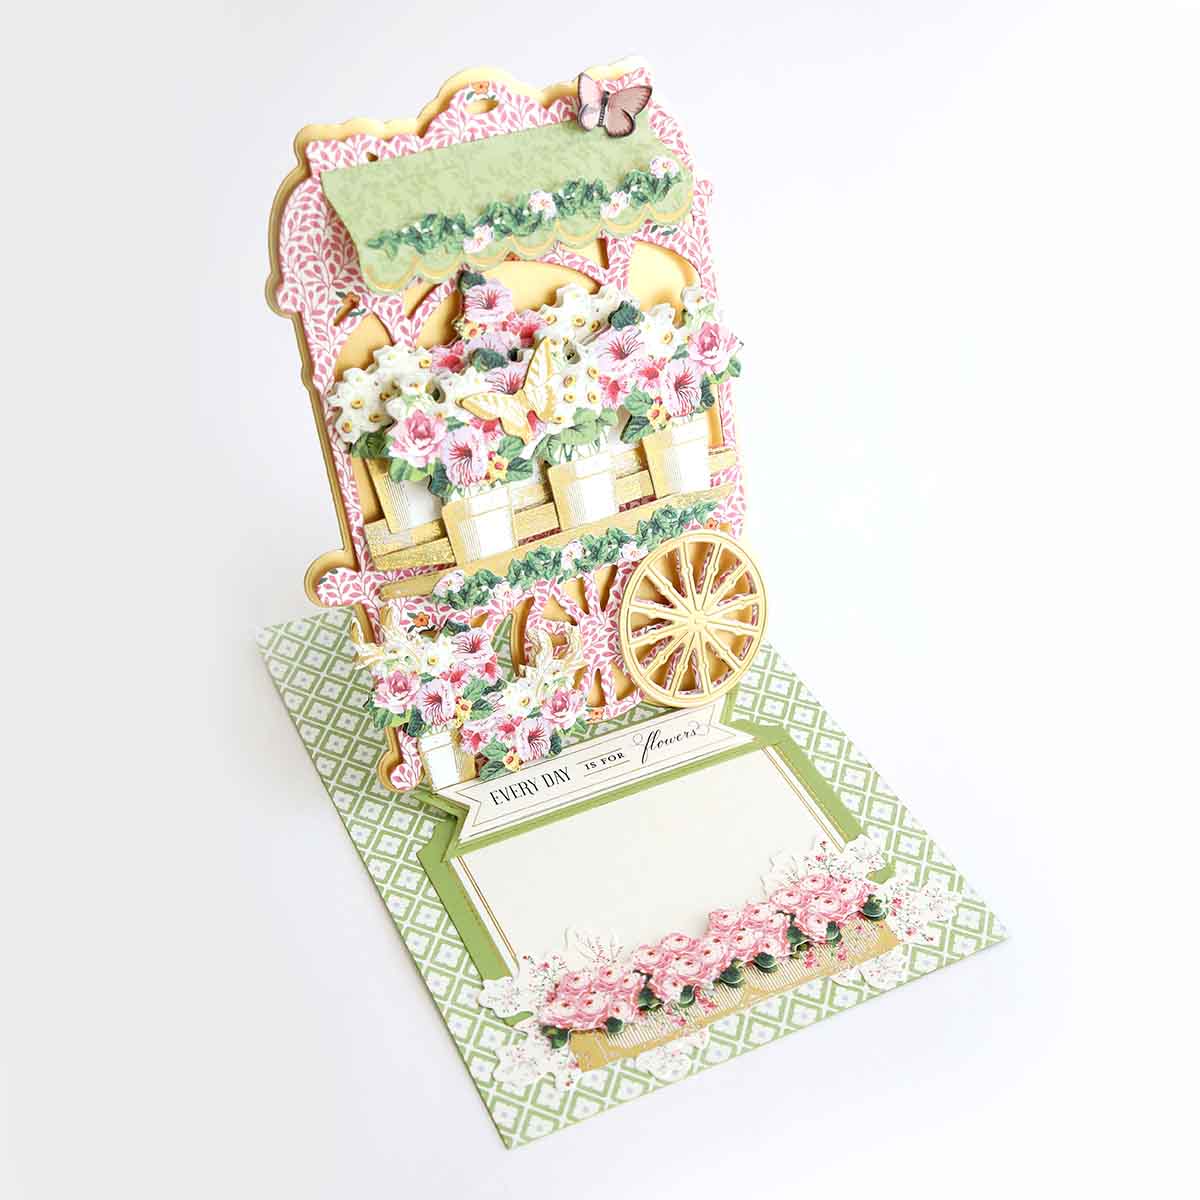 Juliet Wildflower Floral Cardstock 12x12 – Anna Griffin Inc.